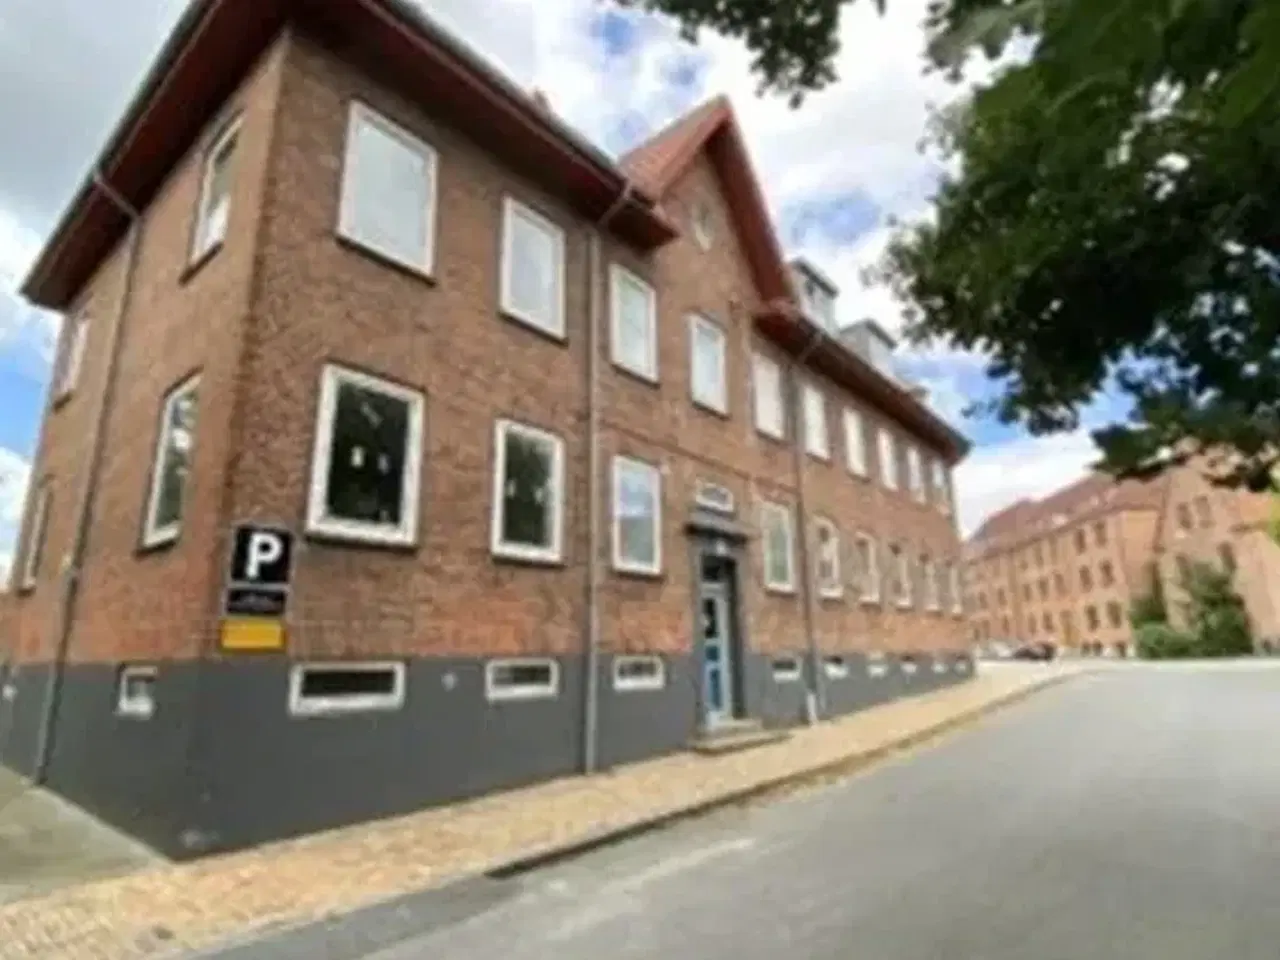 Billede 1 - Lejlighed til leje i 5000 Odense C